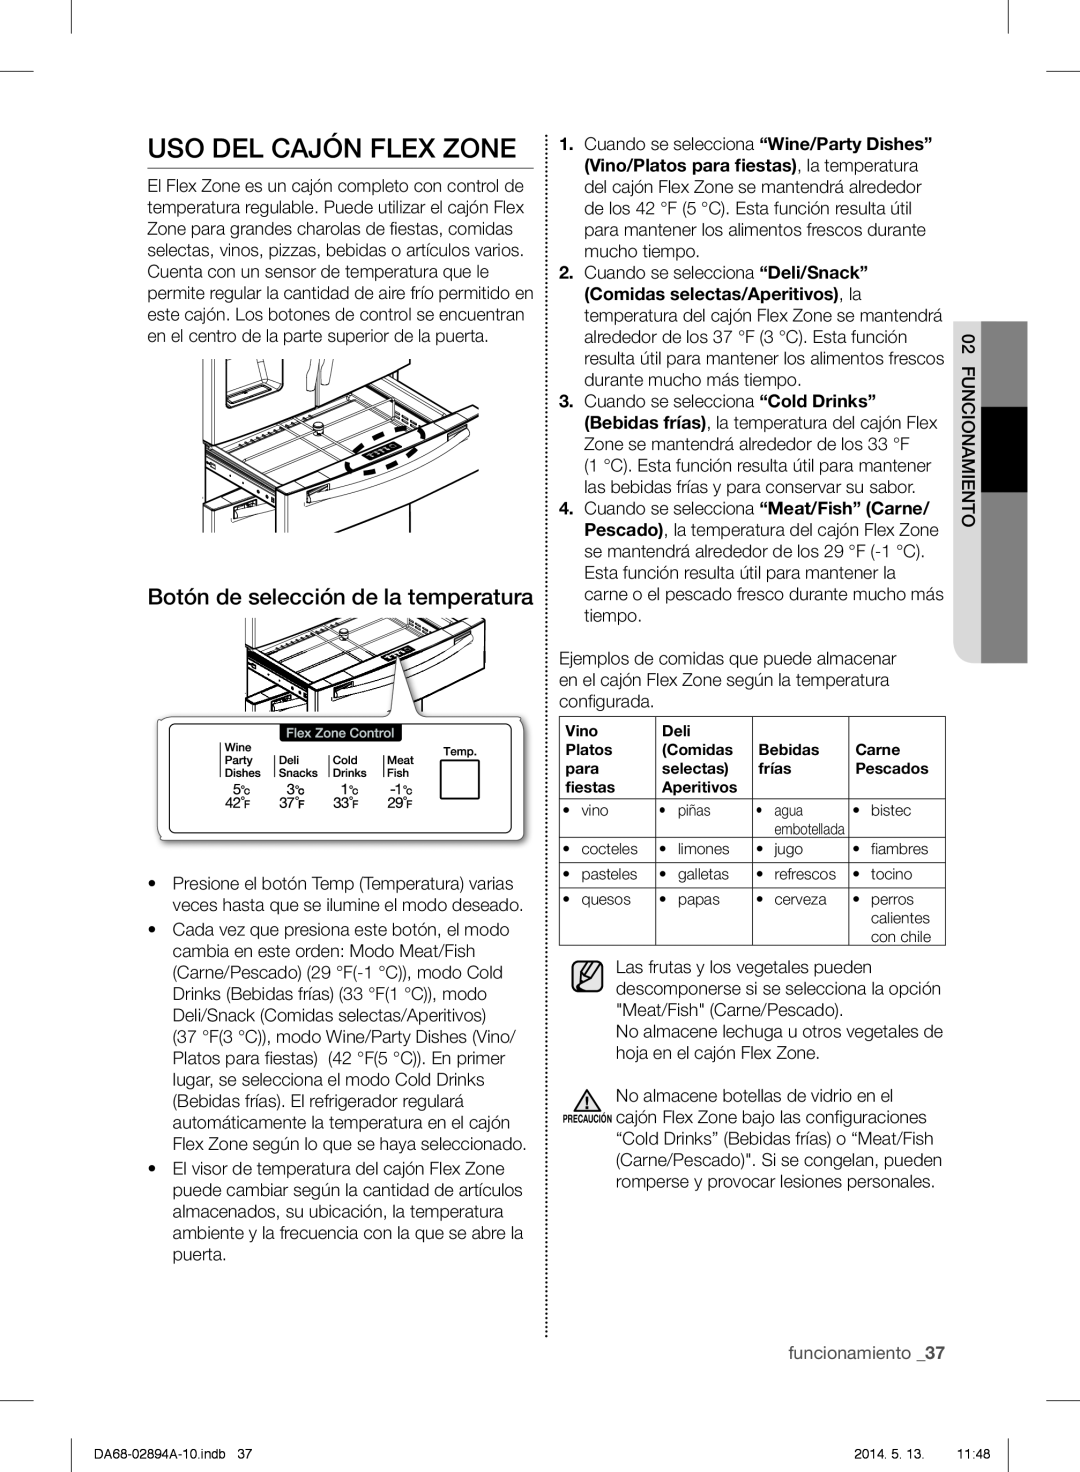 Samsung RF31FMESBSR user manual Uso Del Cajón Flex Zone, Botón de selección de la temperatura, funcionamiento _37 